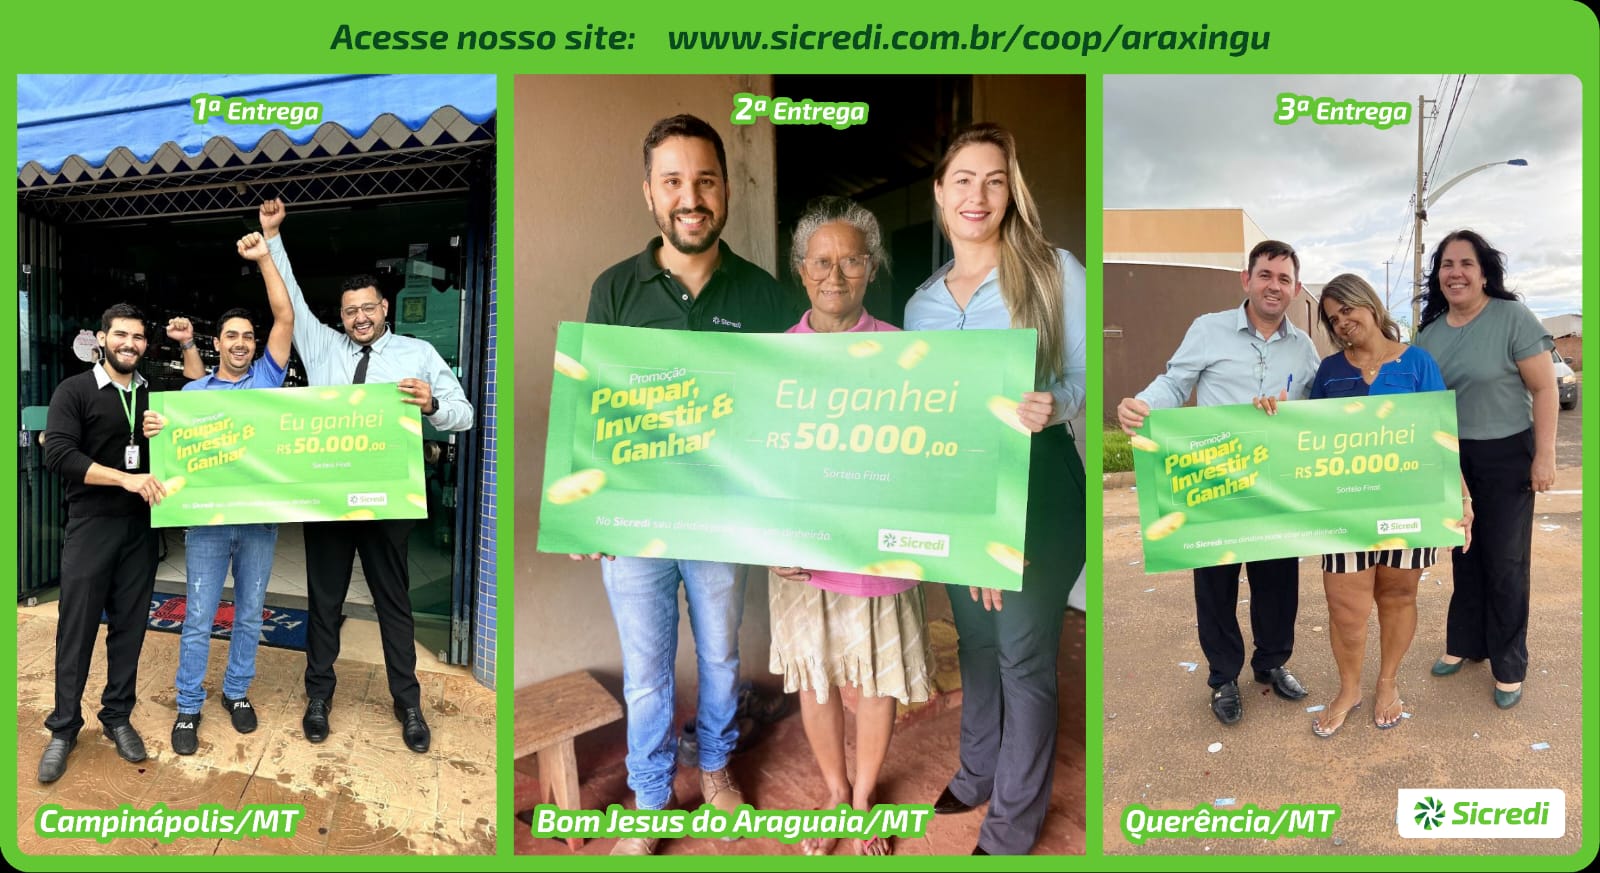 Photo of Sicredi entrega cheques de 50 mil reais da promoção Poupar, Investir e Ganhar